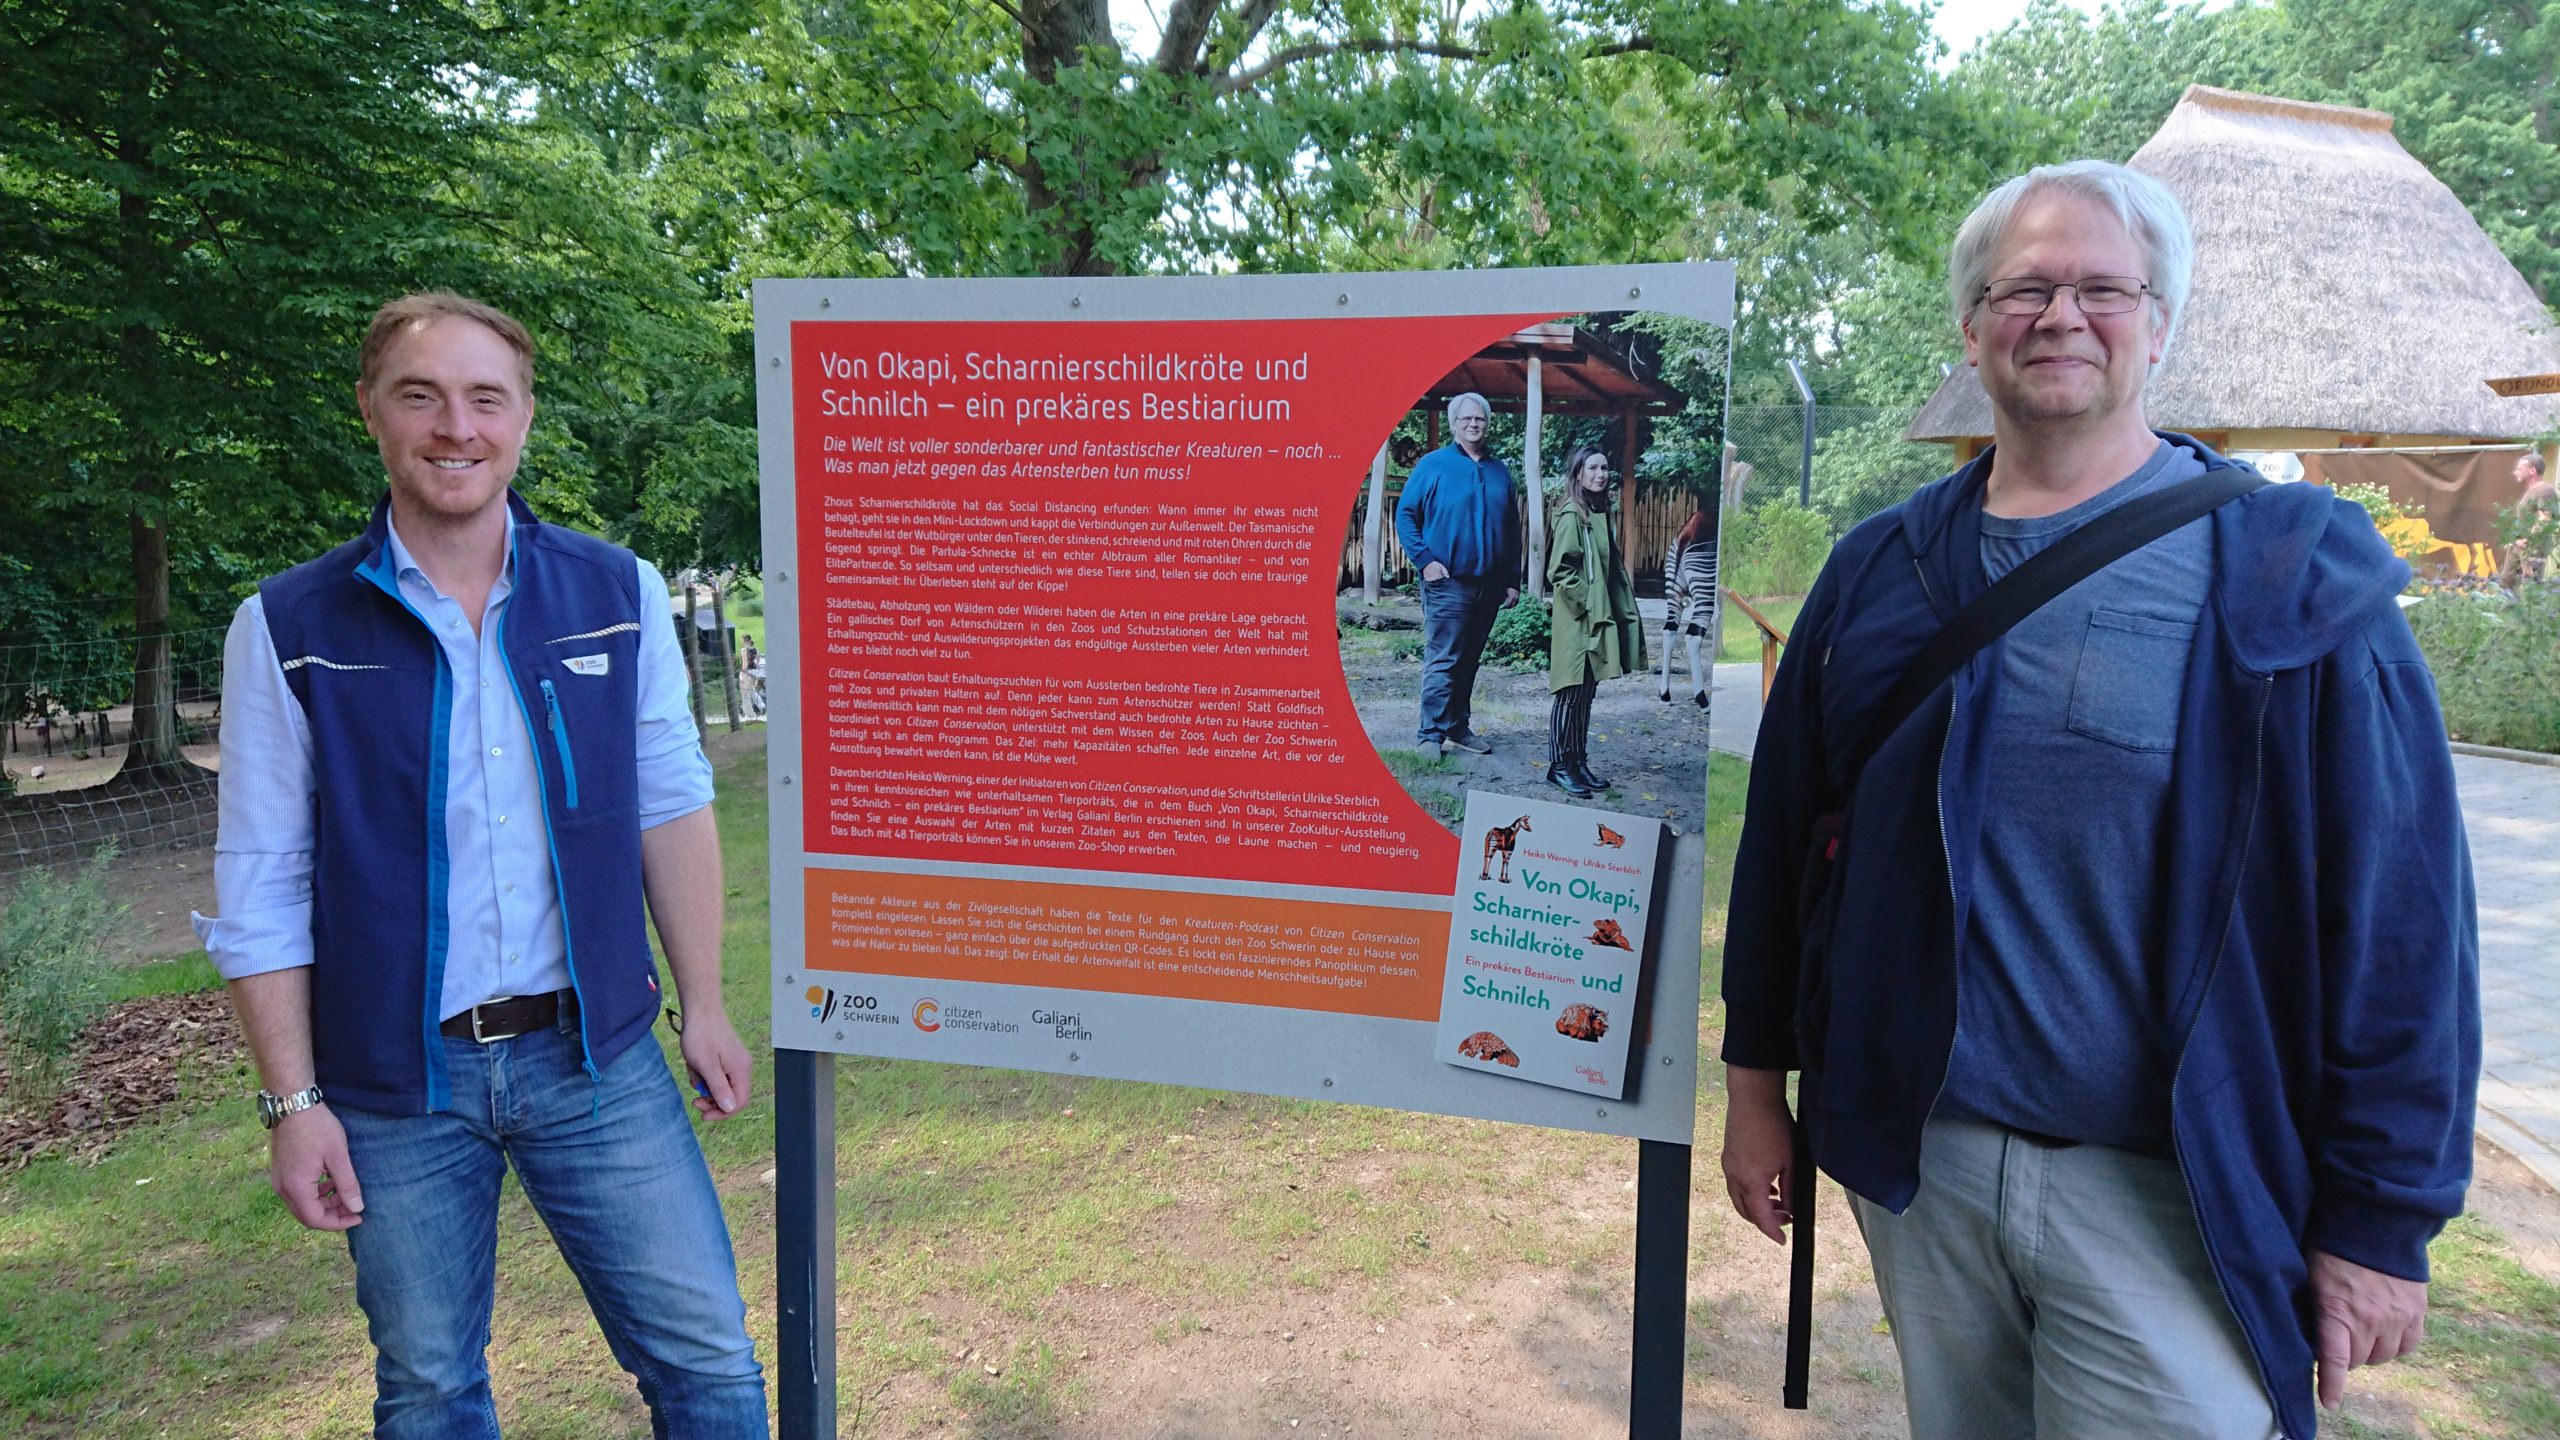 Direktor Tim Schikora (links) und CC-Mitbegründer Heiko Werning vor der Begrüßungstafel zur ZooKultur-Ausstellung